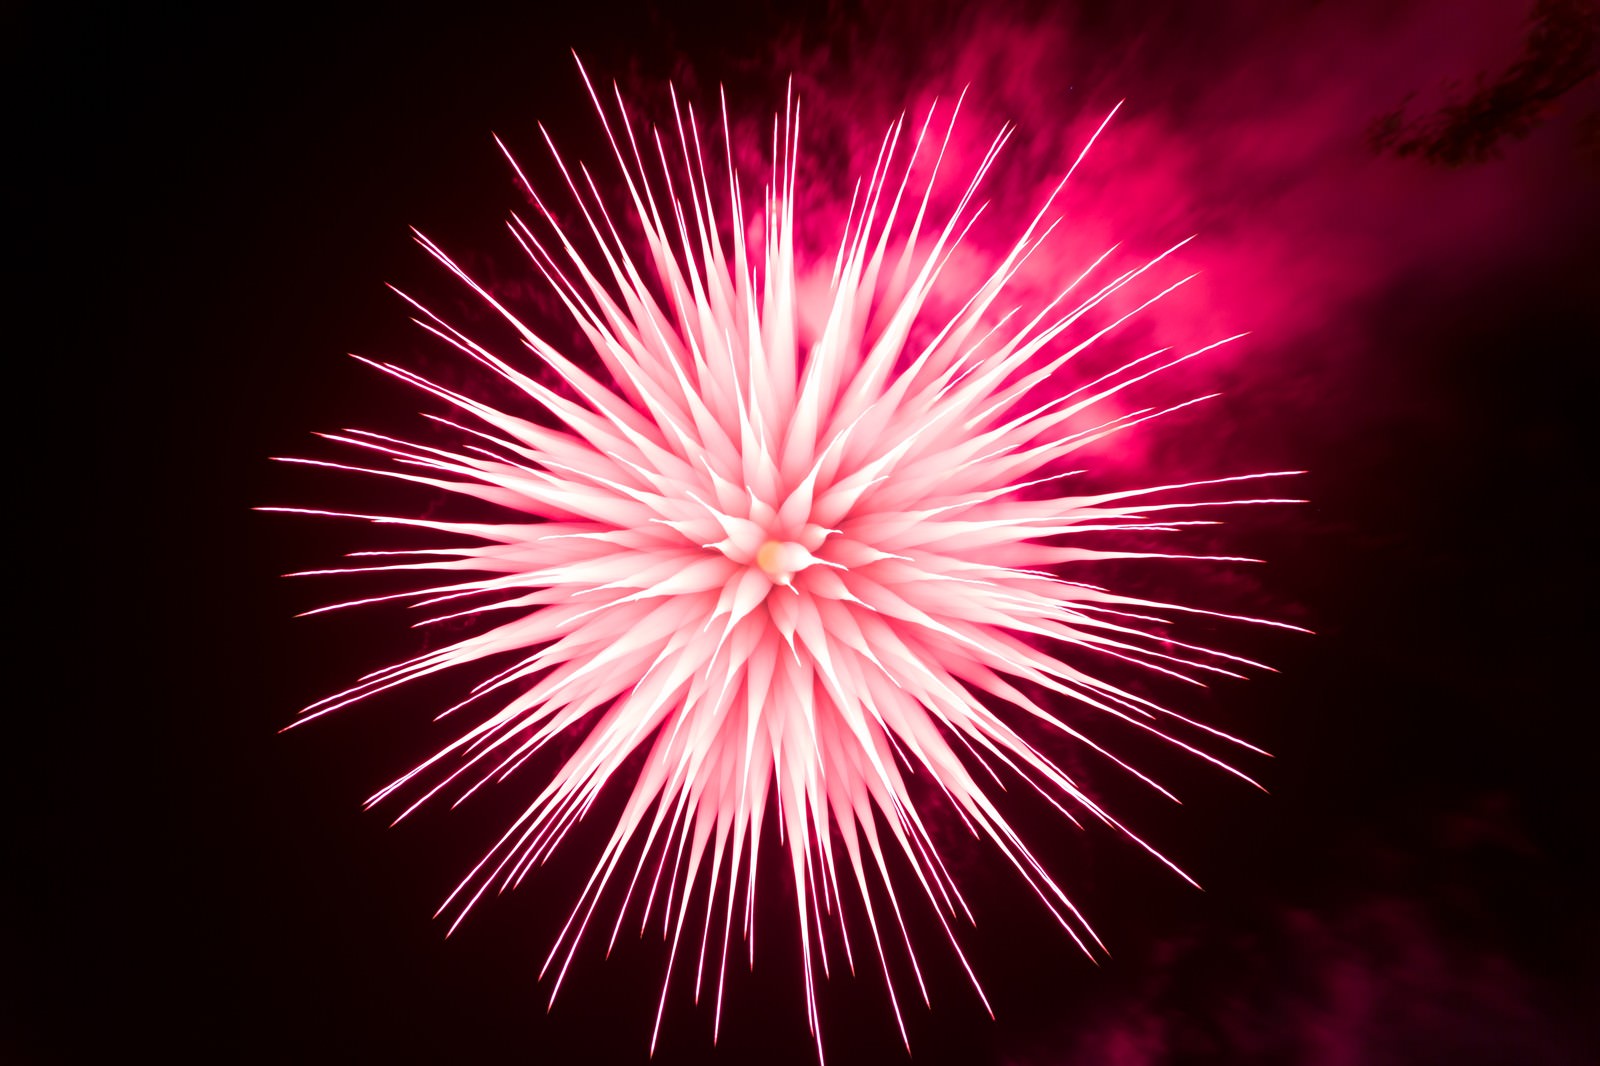 「ピントリングを回して撮影したイソギンチャク花火」の写真